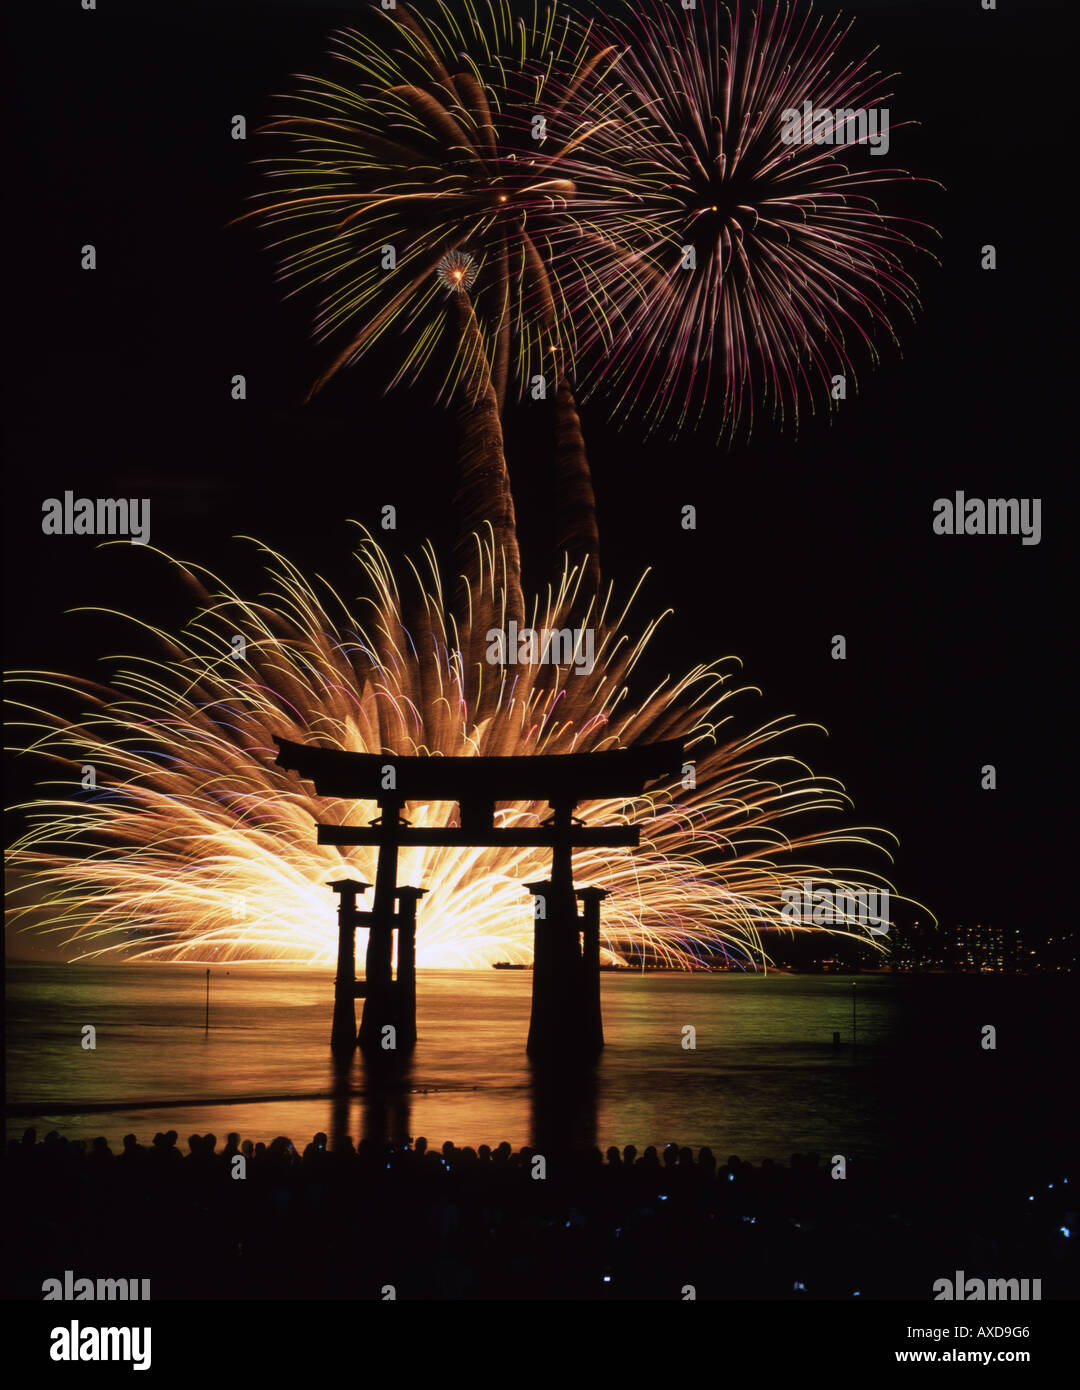 Feuerwerk-Festival. Das floating Gate der Torii am Itsukushima-Schrein, Insel Miyajima, Präfektur Hiroshima, Japan. Stockfoto